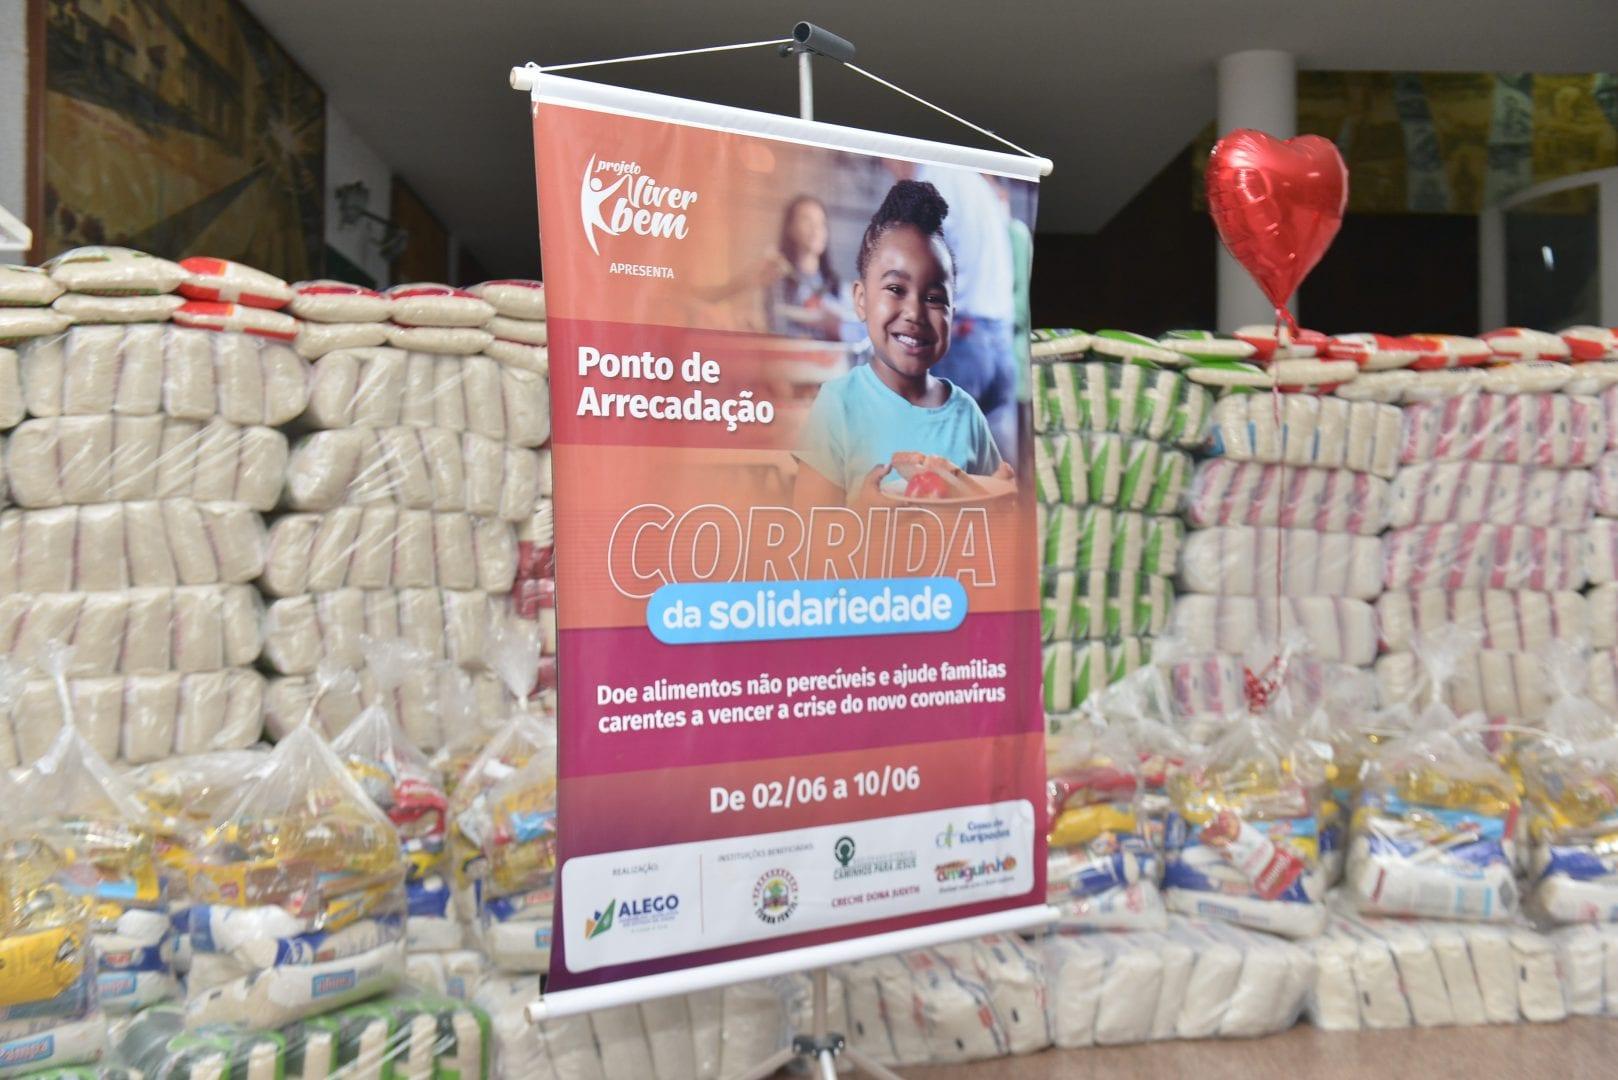 Alego arrecada mais de 21 toneladas de alimentos em Corrida da Solidariedade